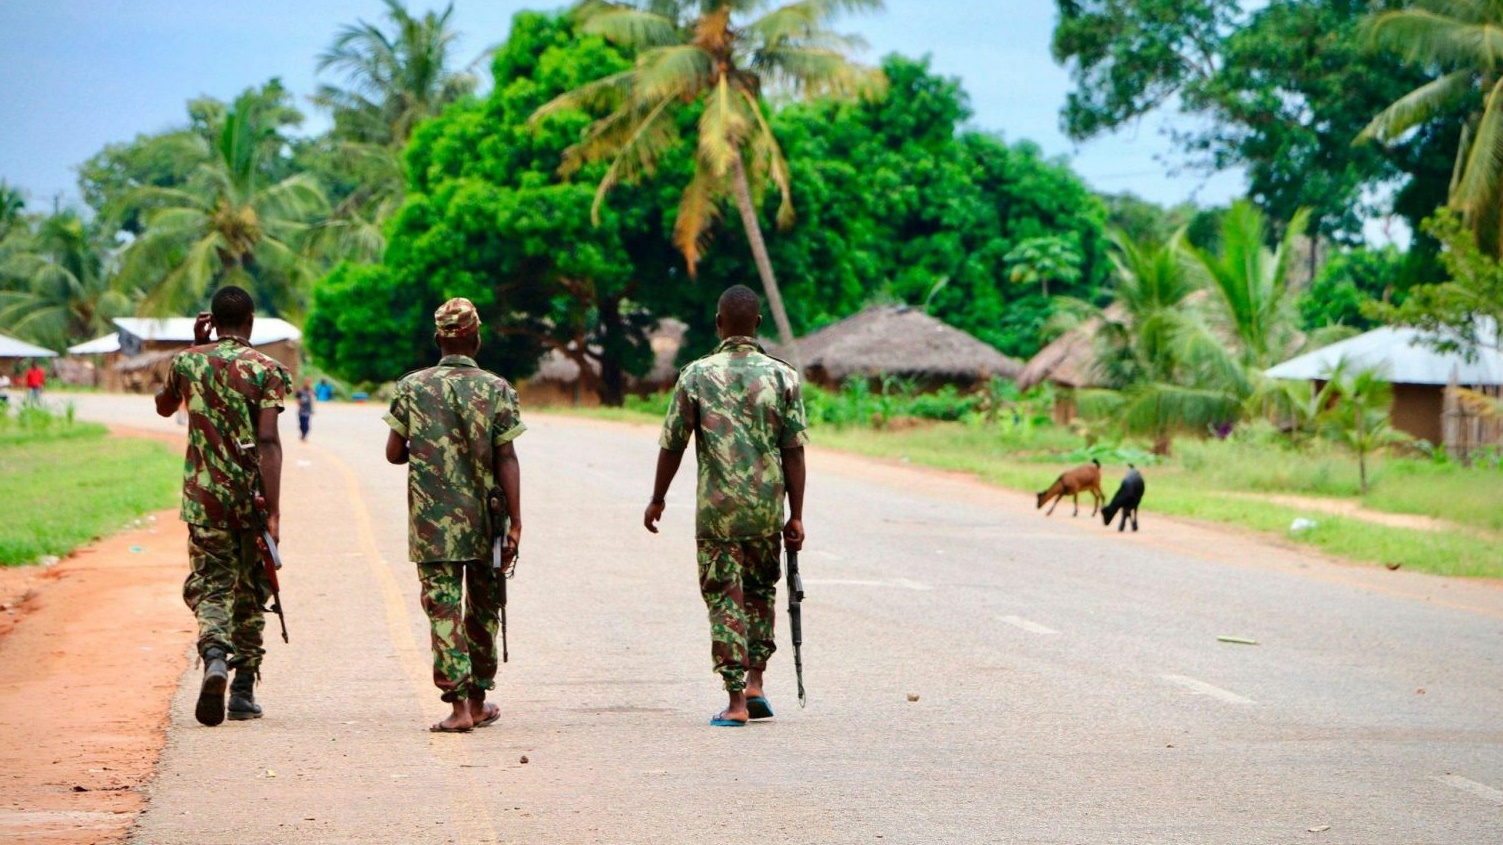 دورية للجيش الموزمبيقي